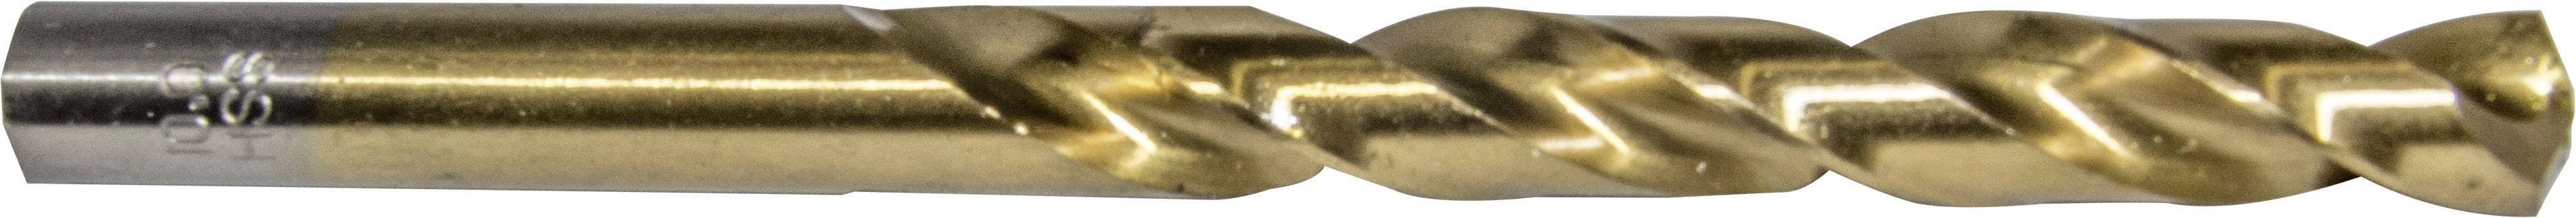 HELLER 29253 5 Metall-Spiralbohrer 1 Stück 1.8 mm Gesamtlänge 40 mm 1 St.